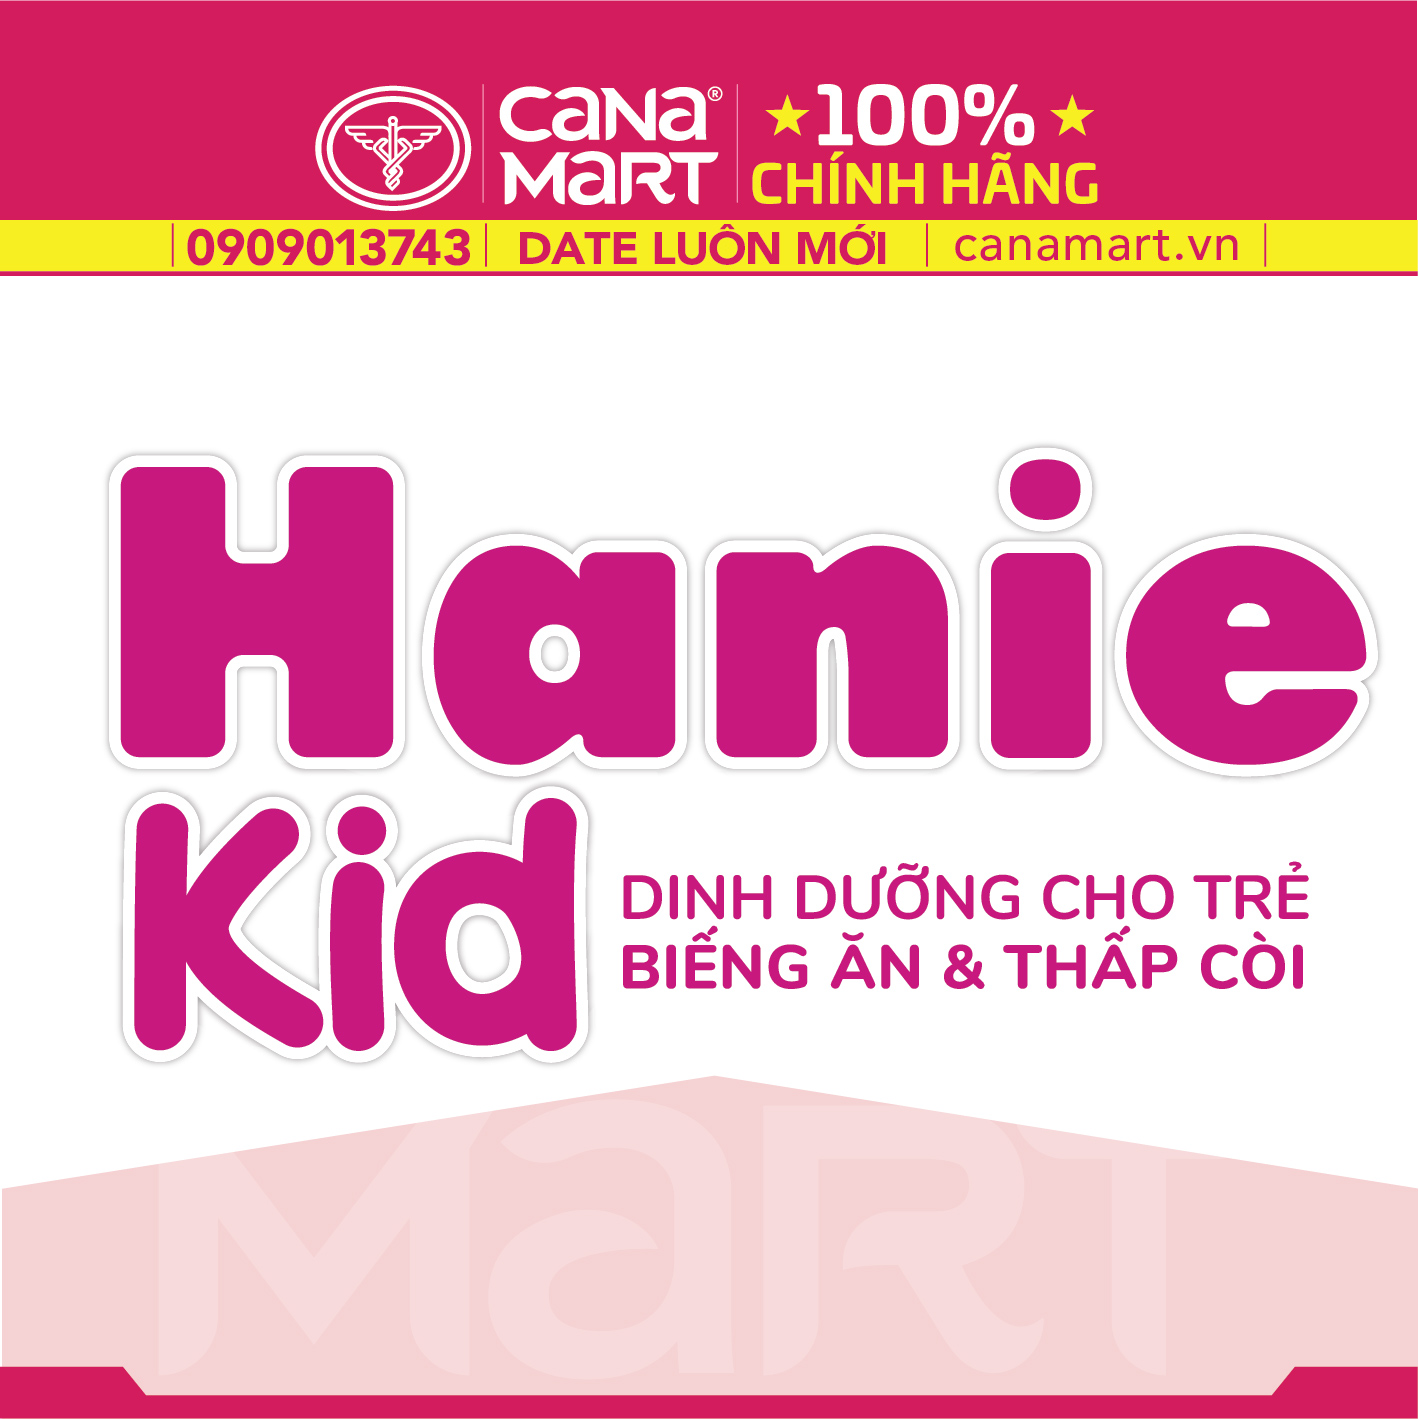 Sữa bột Nutricare Hanie Kid 2+ dinh dưỡng chuyên biệt cho trẻ biếng ăn, suy dinh dưỡng (850g)